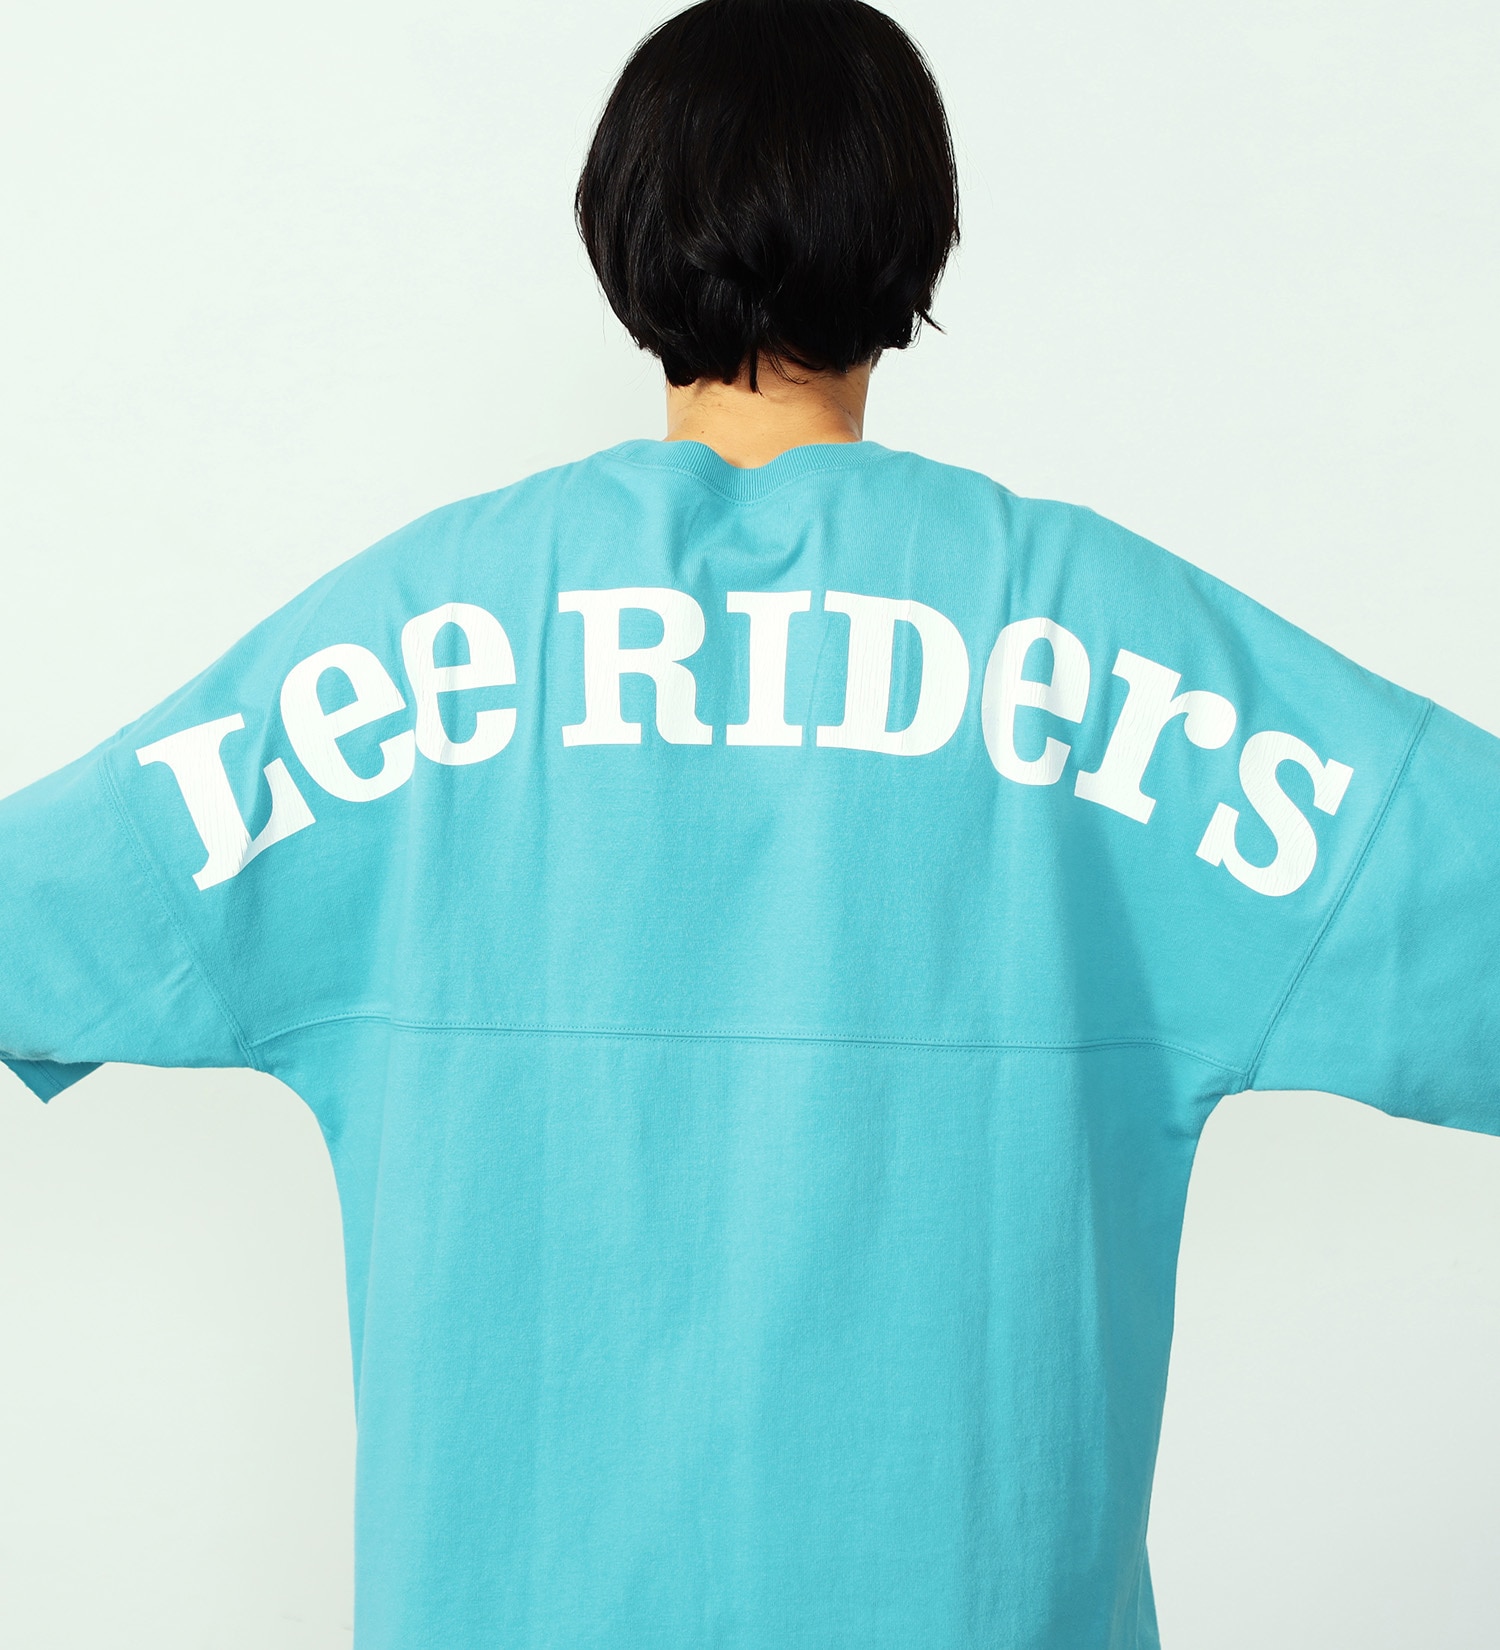 Lee(リー)のバックアーチ ショートスリーブTee|トップス/Tシャツ/カットソー/メンズ|サックスブルー